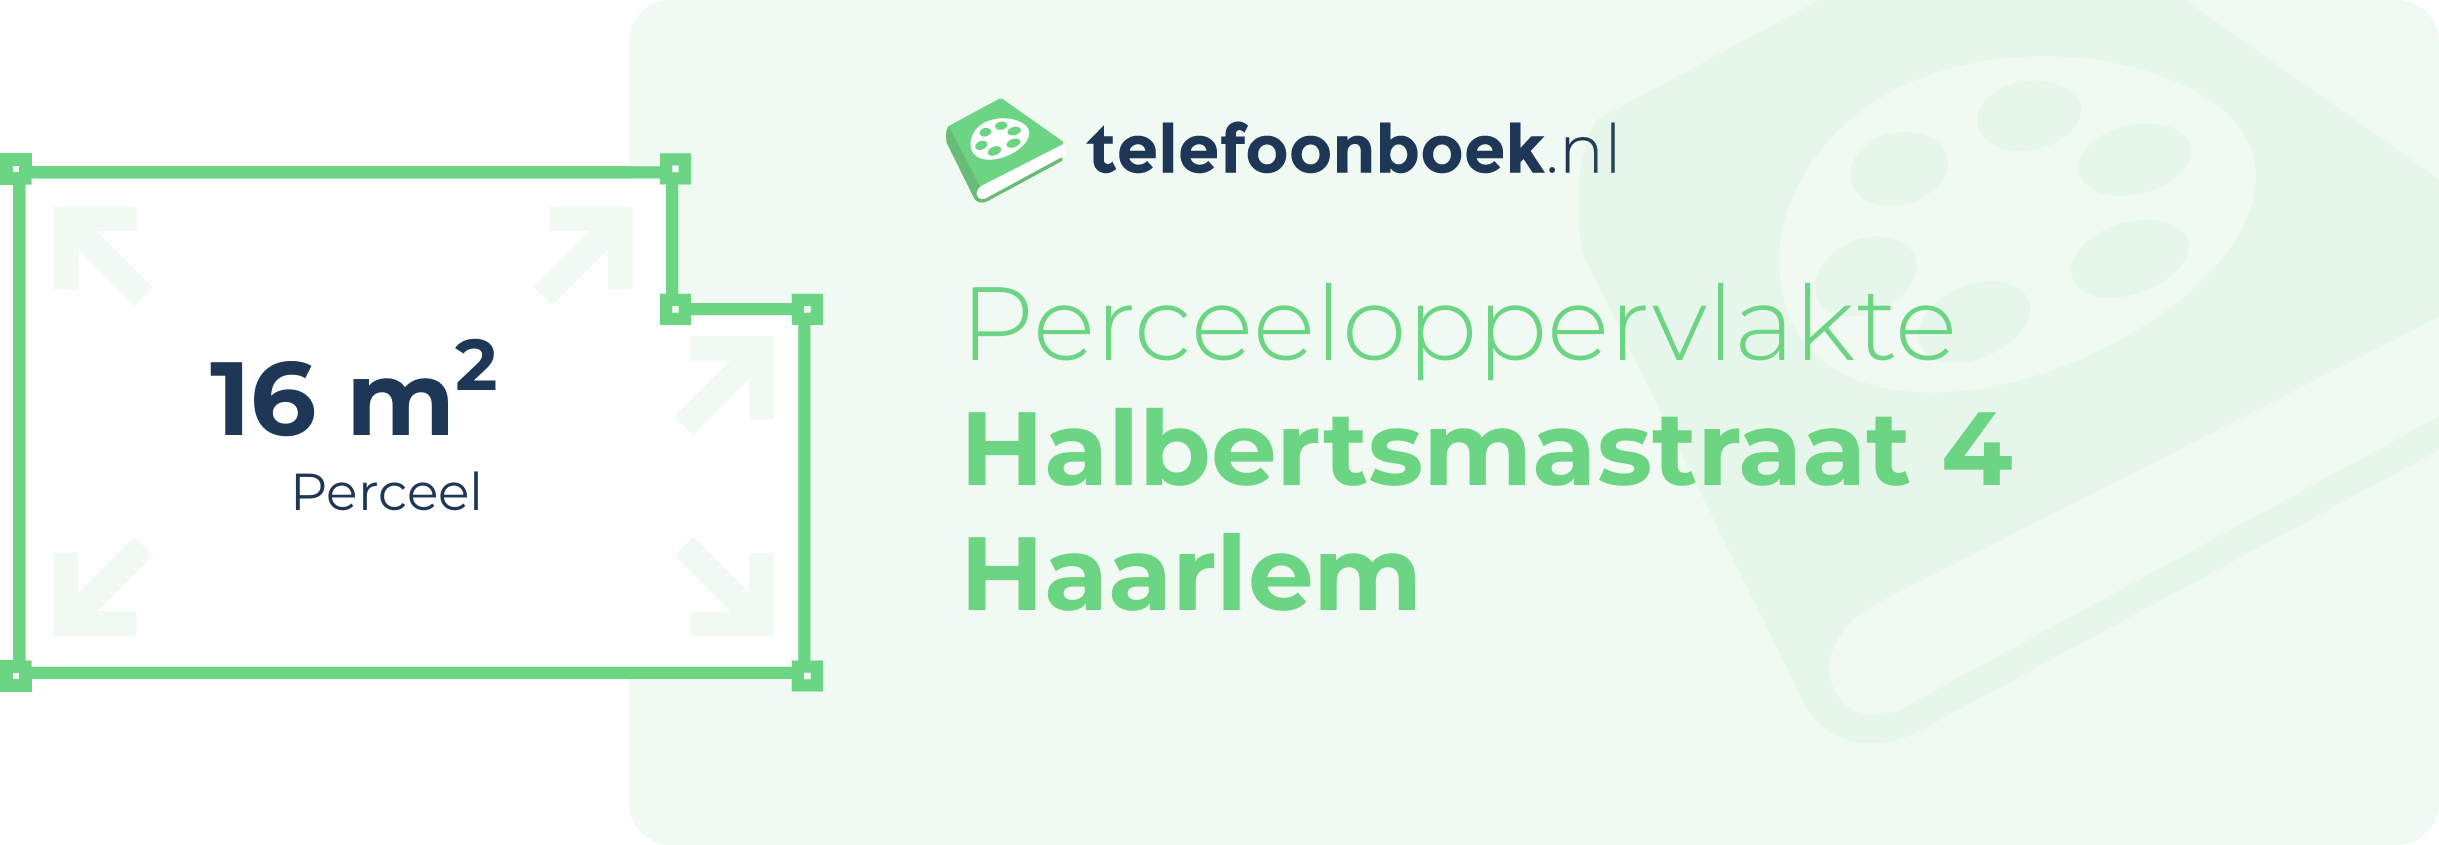 Perceeloppervlakte Halbertsmastraat 4 Haarlem